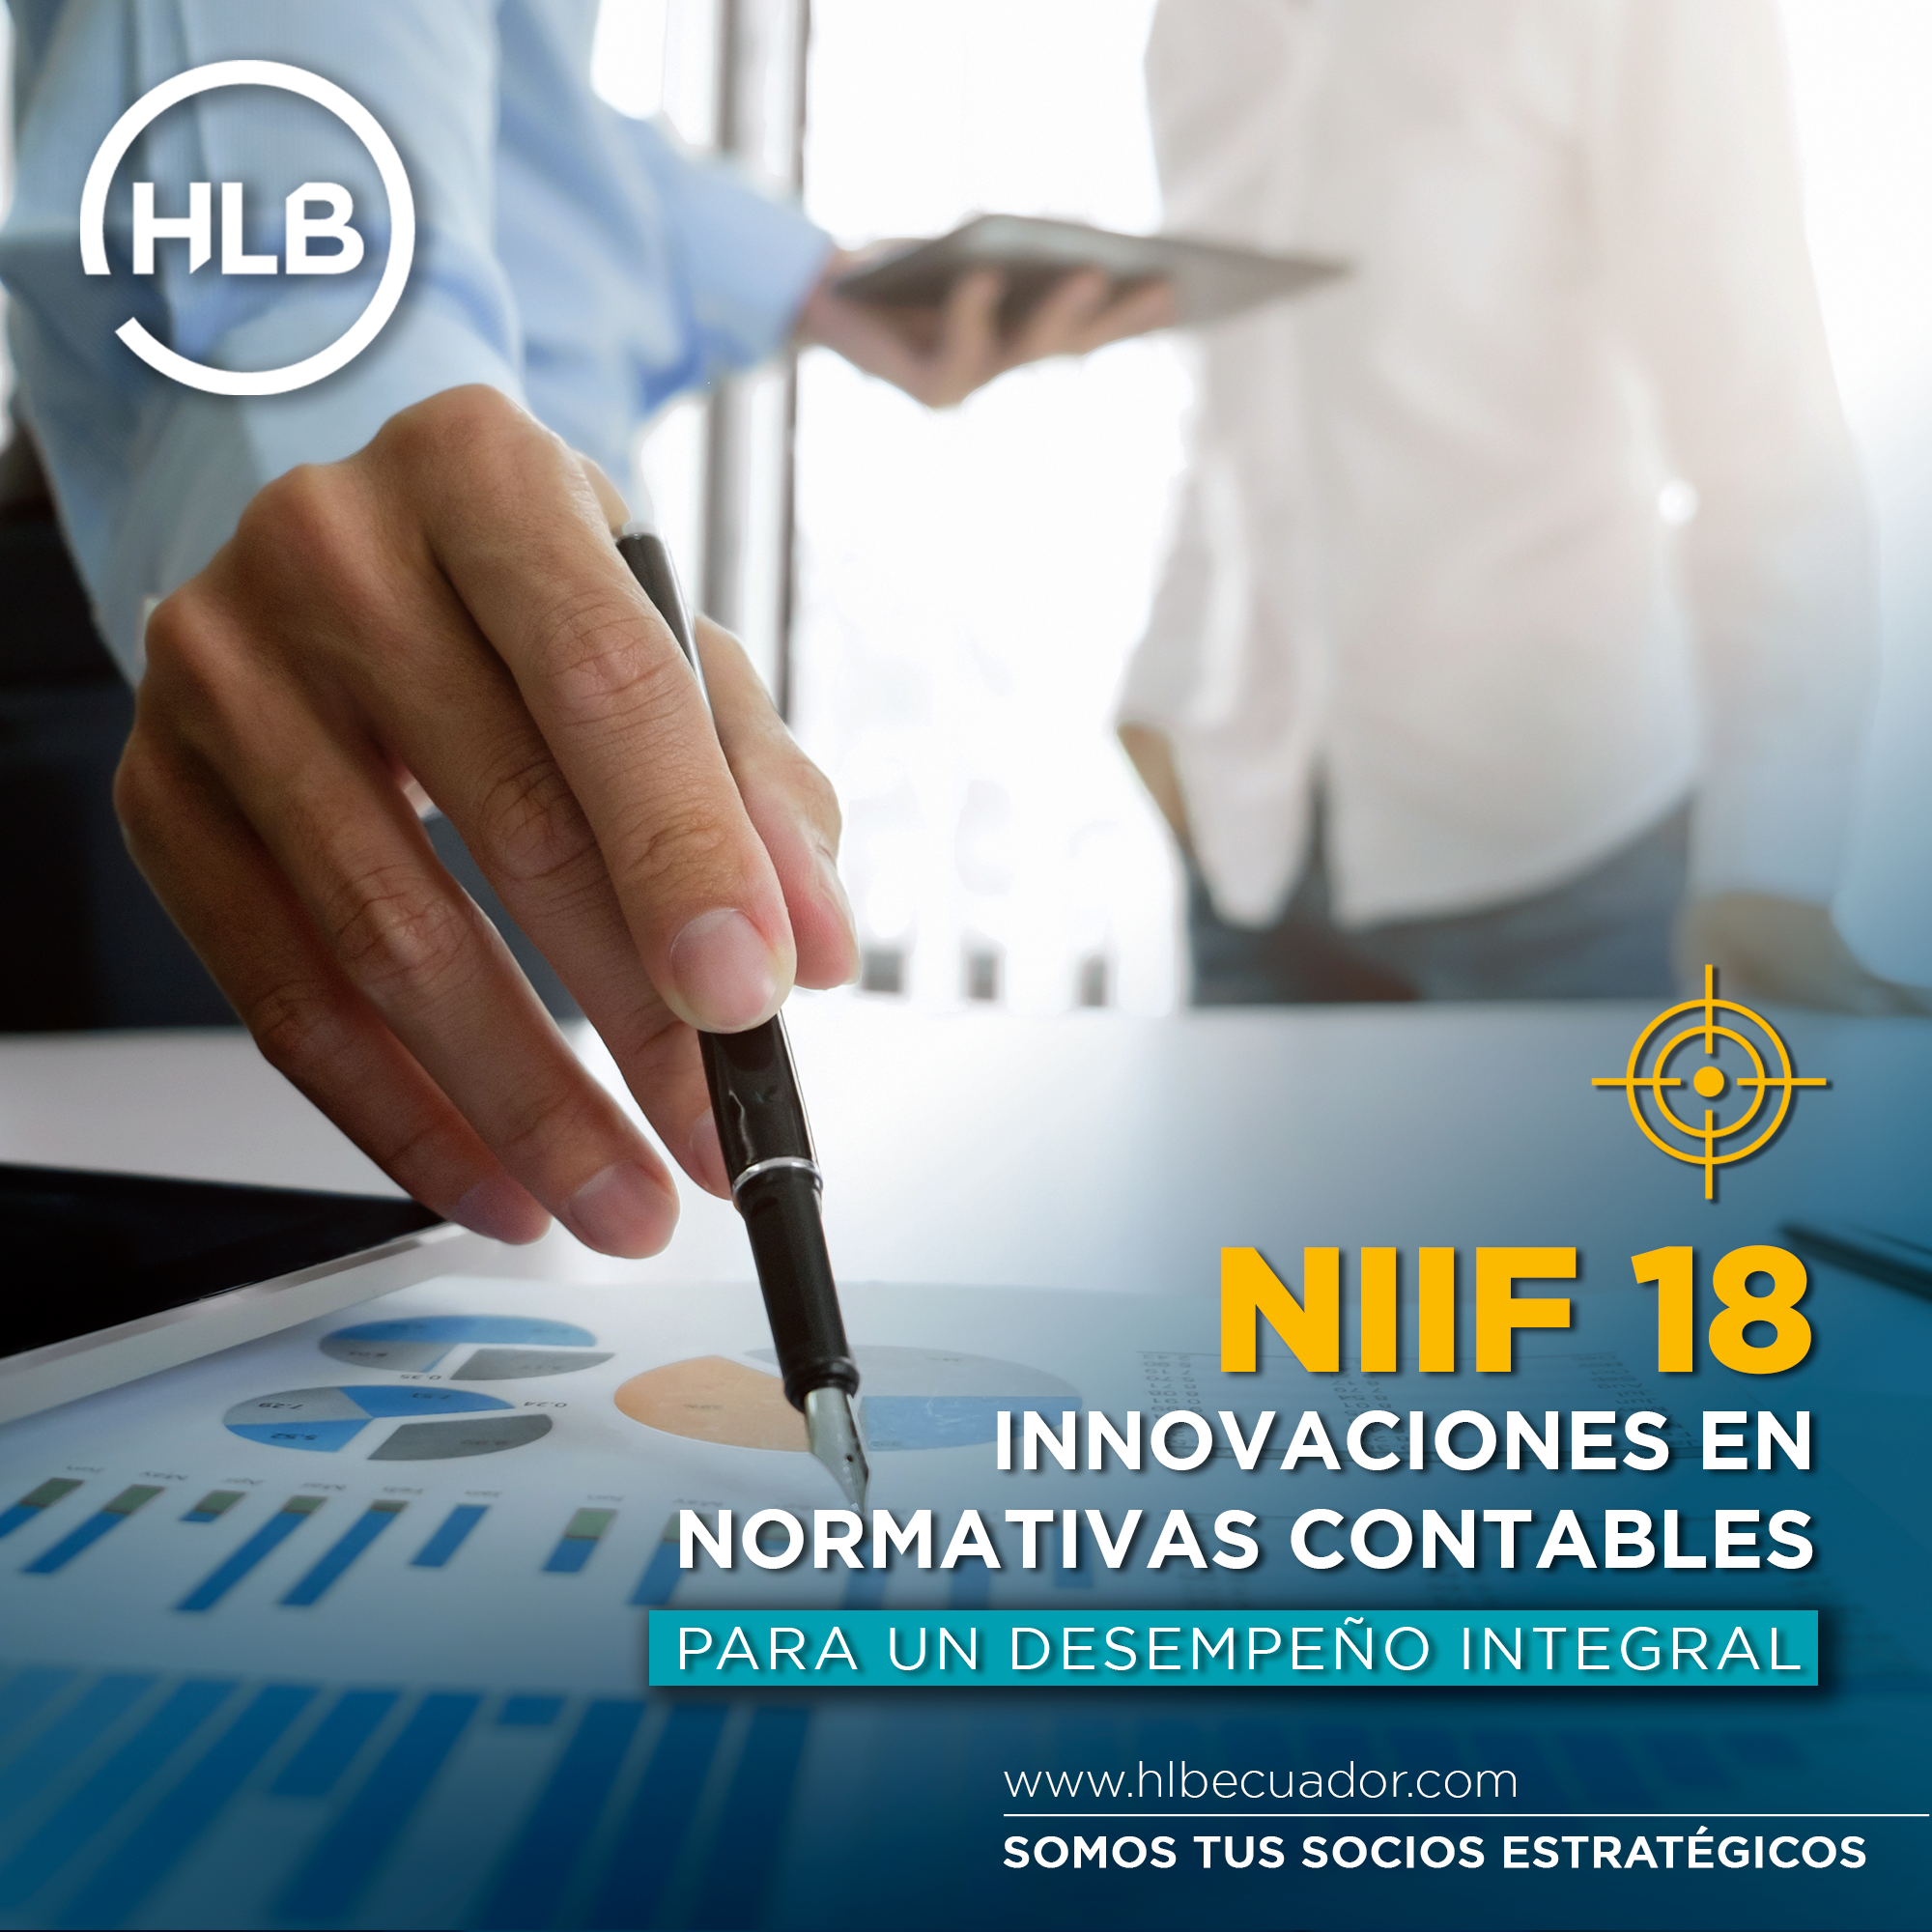 Featured image for “NIIF 18 “PRESENTACIÓN Y REVELACIÓN EN ESTADOS FINANCIEROS””